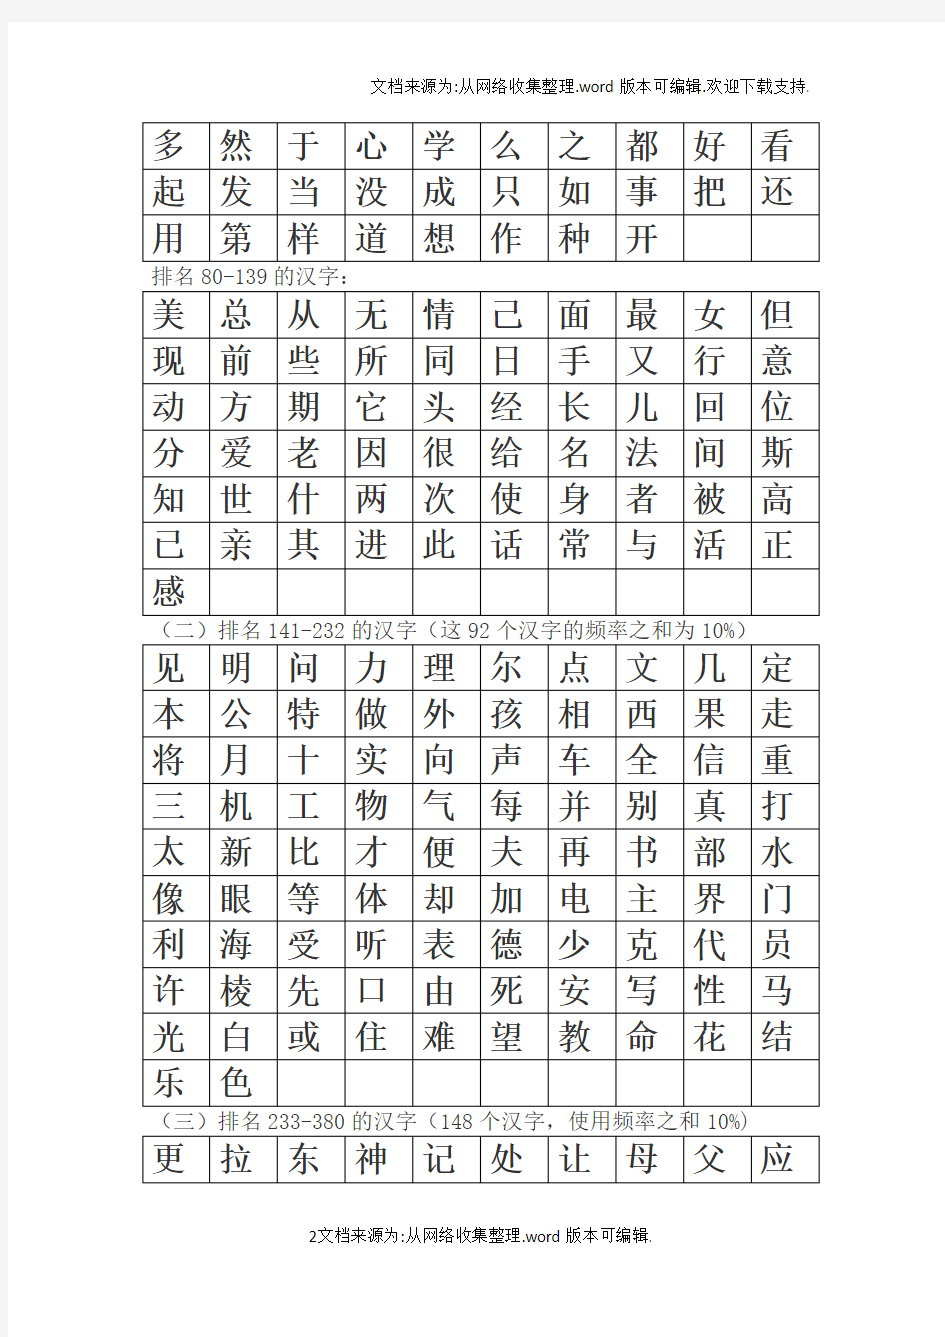 最常用的1000个汉字(简体表)